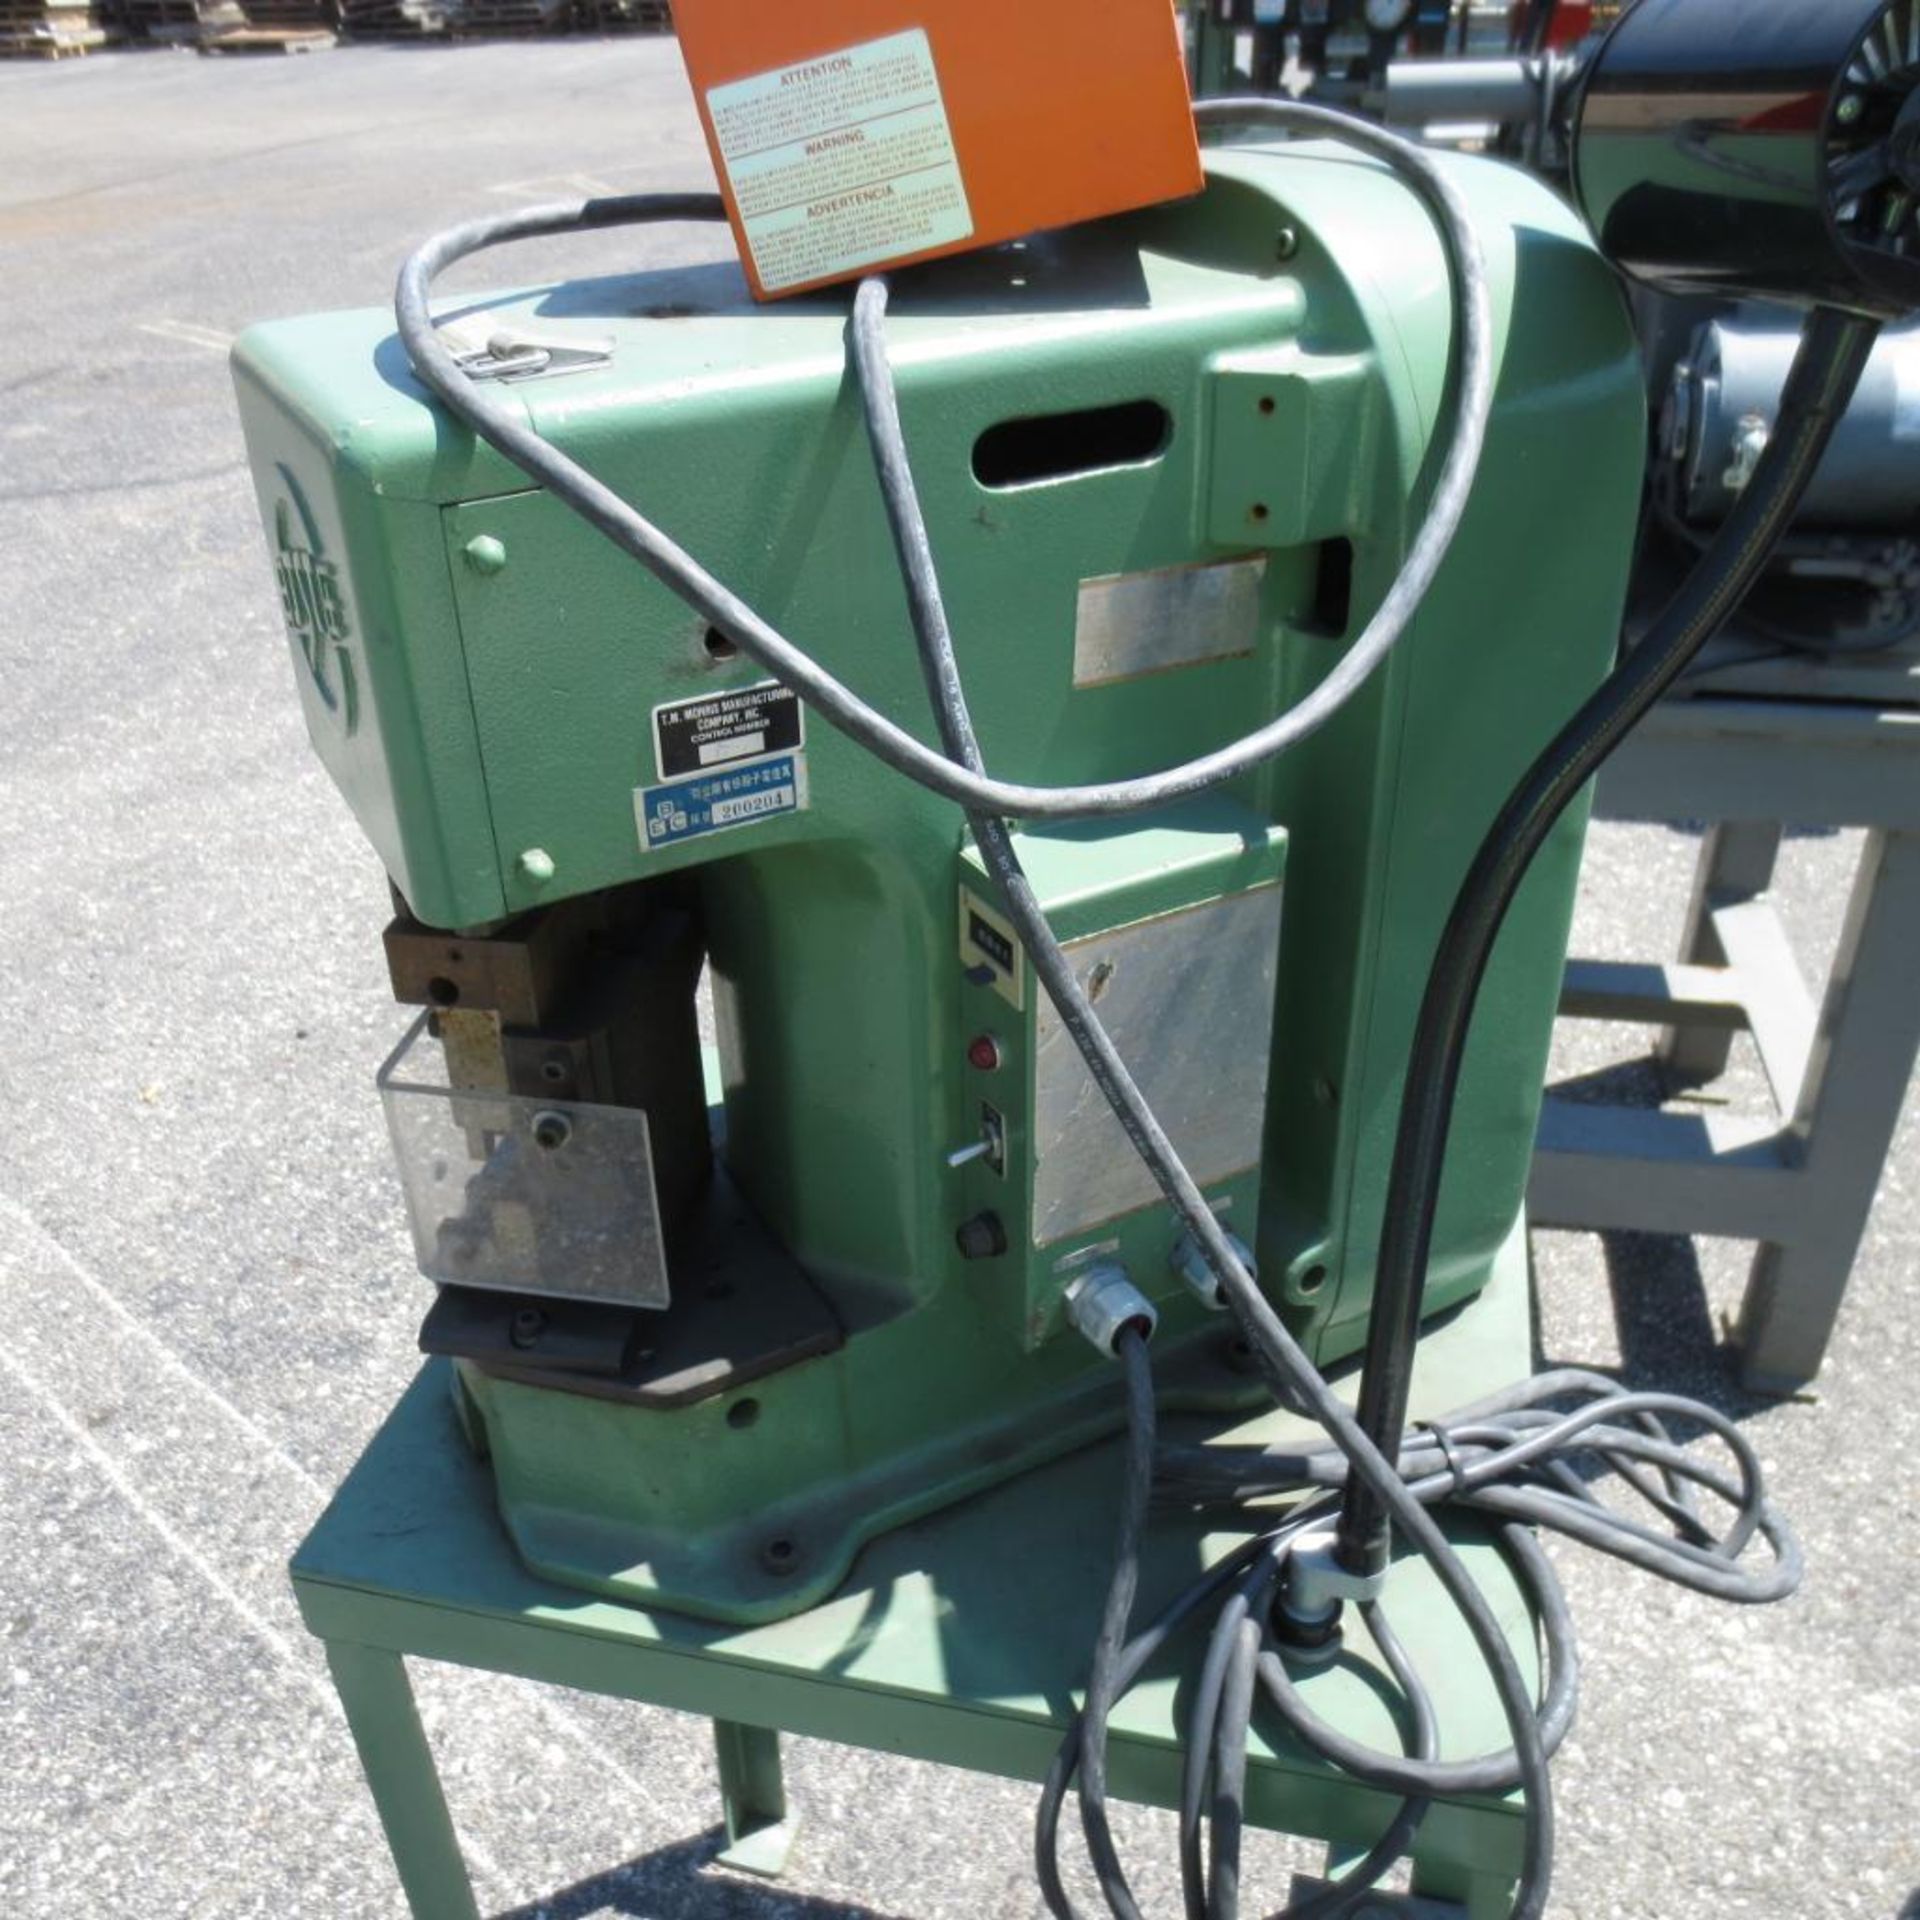 BJST Model AP-K2 Press S/N: 58-5394, AC 100V, 50/60 HZ, 200 W located at 707 Burlington Ave Loganspo - Image 4 of 4